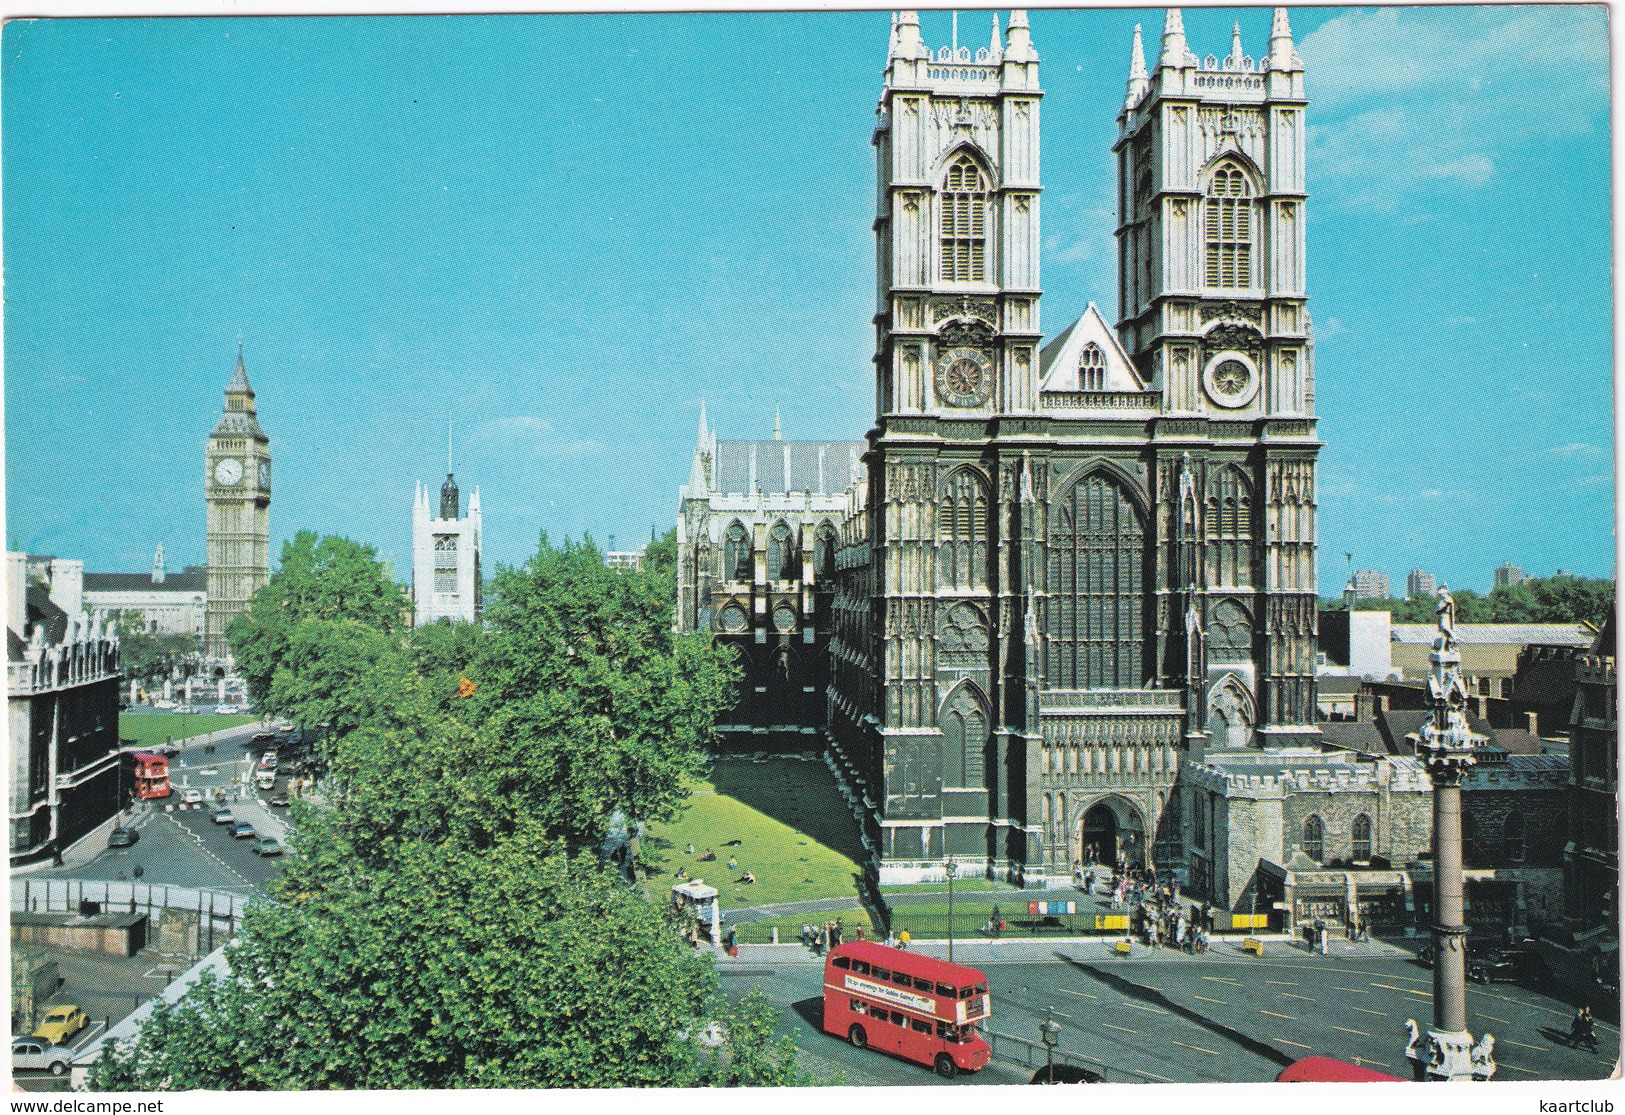 London: CITROËN 2CV, VW 1200 KÄFER/COX, JAGUAR 240, AUSTIN FX TAXI, DOUBLE DECK BUS - Westminster Abbey - Toerisme